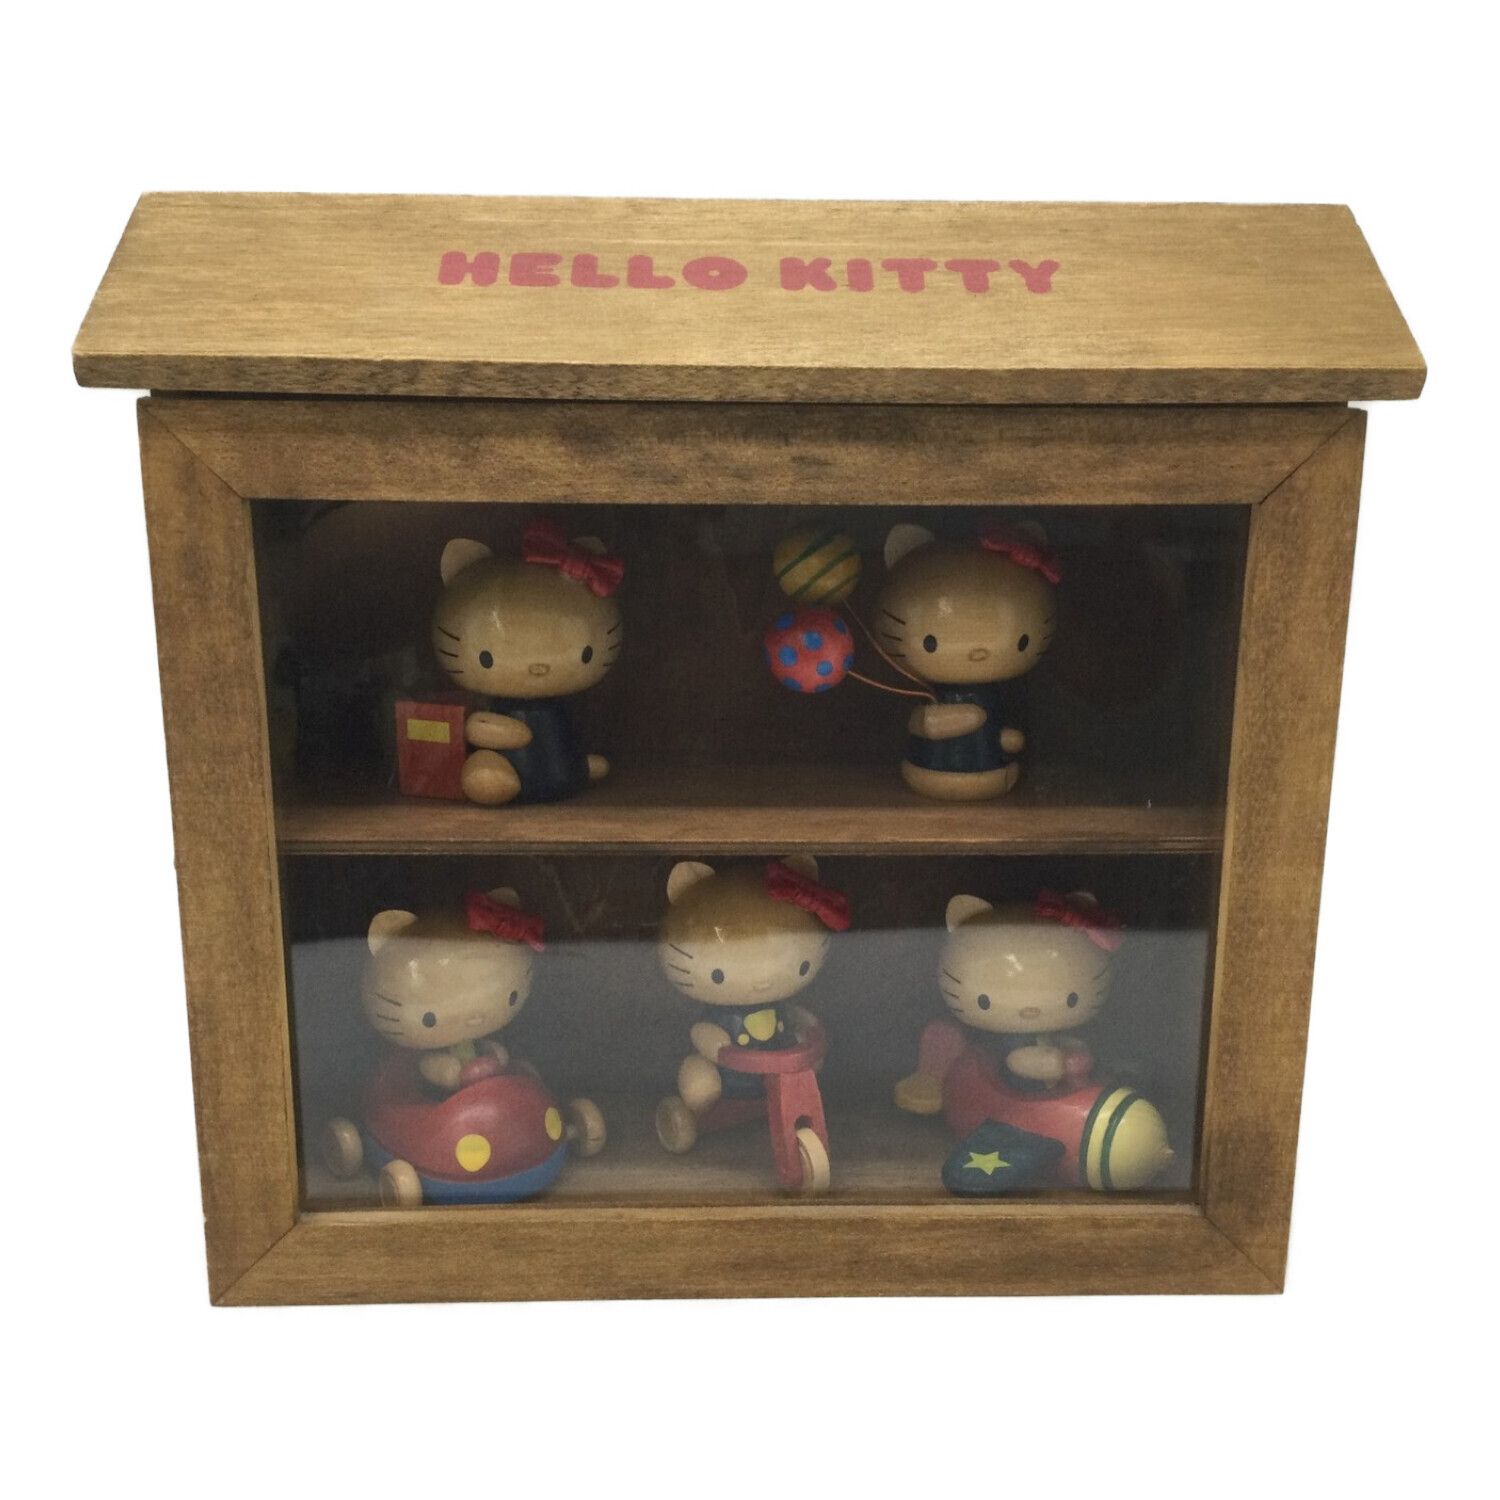 HELLO KITTY (ハローキティ) ウッドコレクションセット 現状販売品 